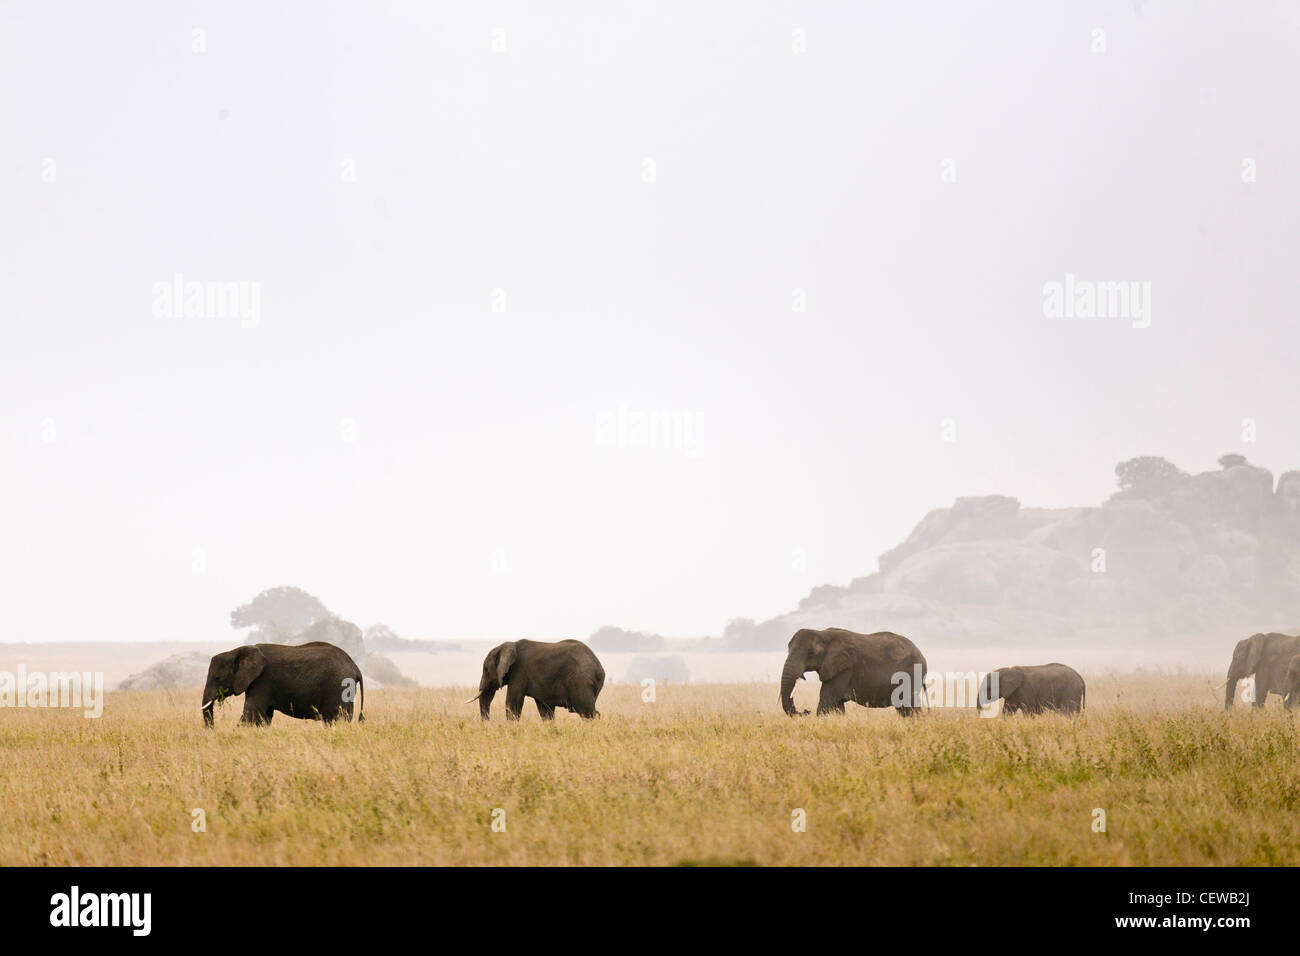 Elephant family walking across the savanna. Stock Photo